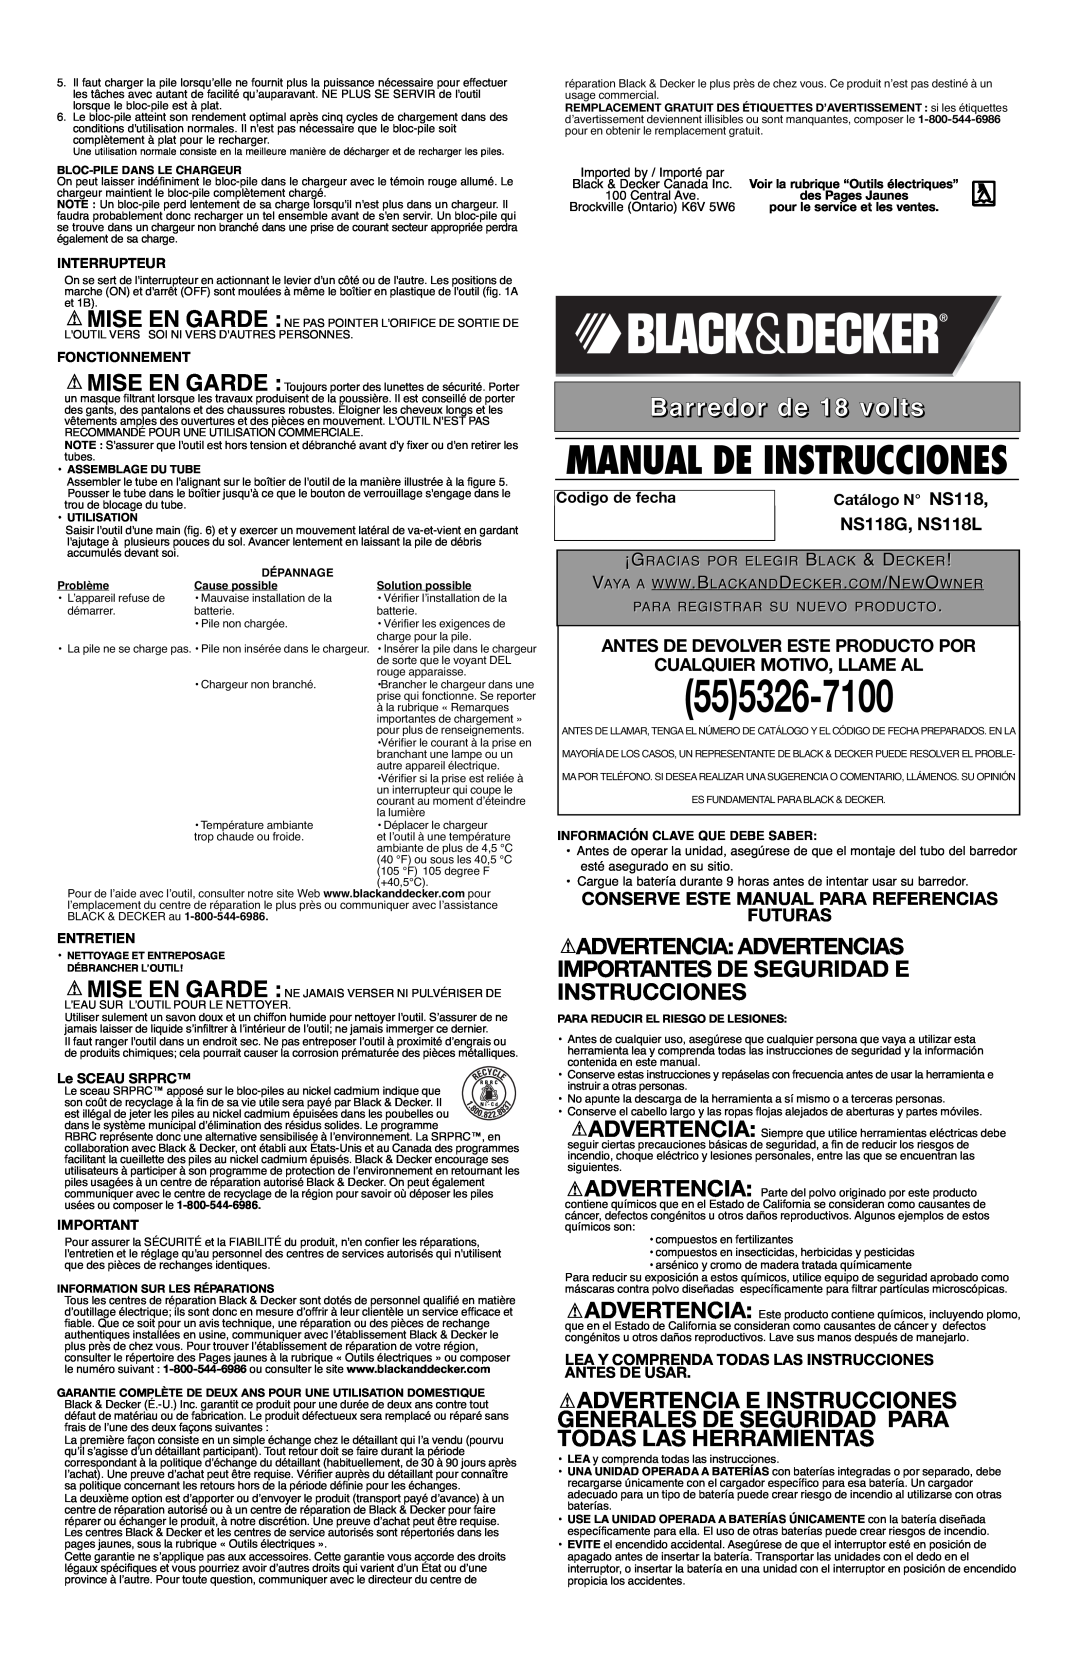 Black & Decker NS118 Barredor de 18 volts, Advertencia Advertencias Importantes De Seguridad E Instrucciones, Interrupteur 